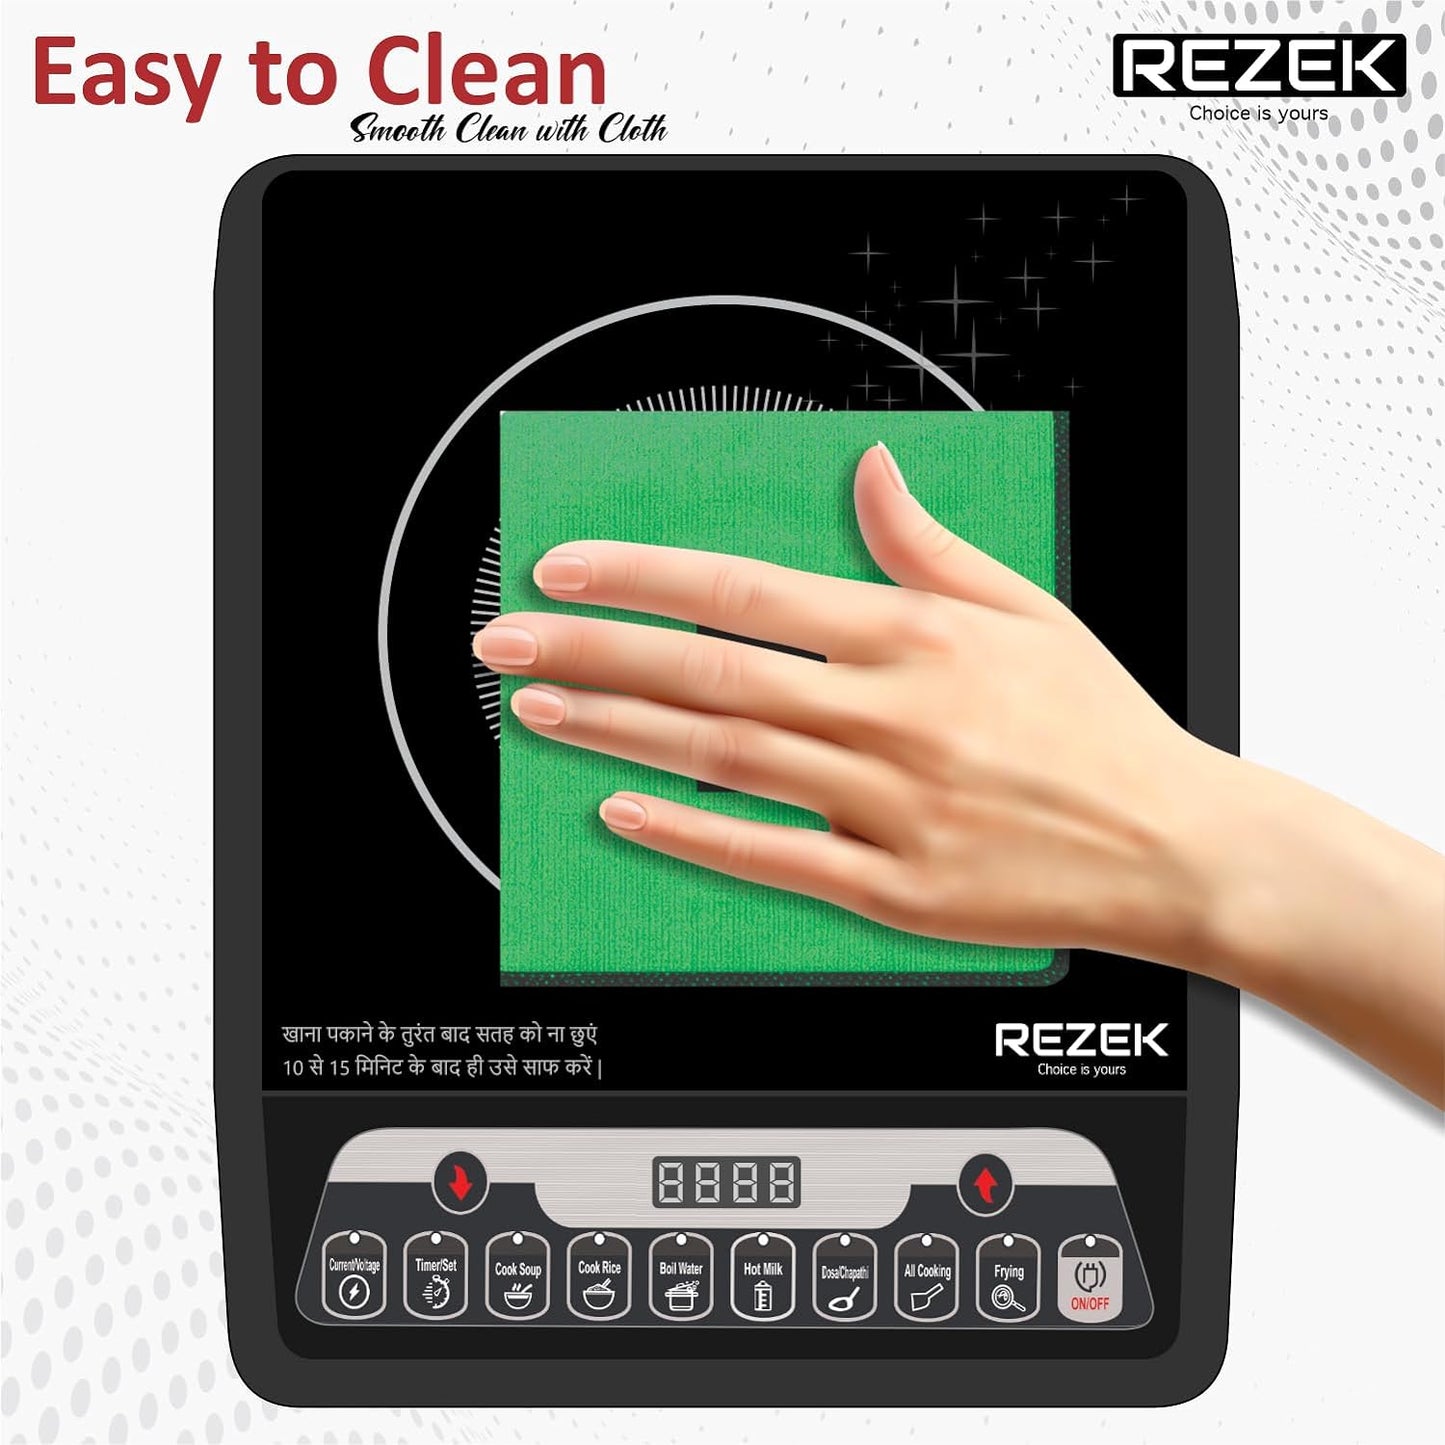 REZEK 2000 Watt Induction Cooktop with Auto Shut-Off & Over-Heat Protection